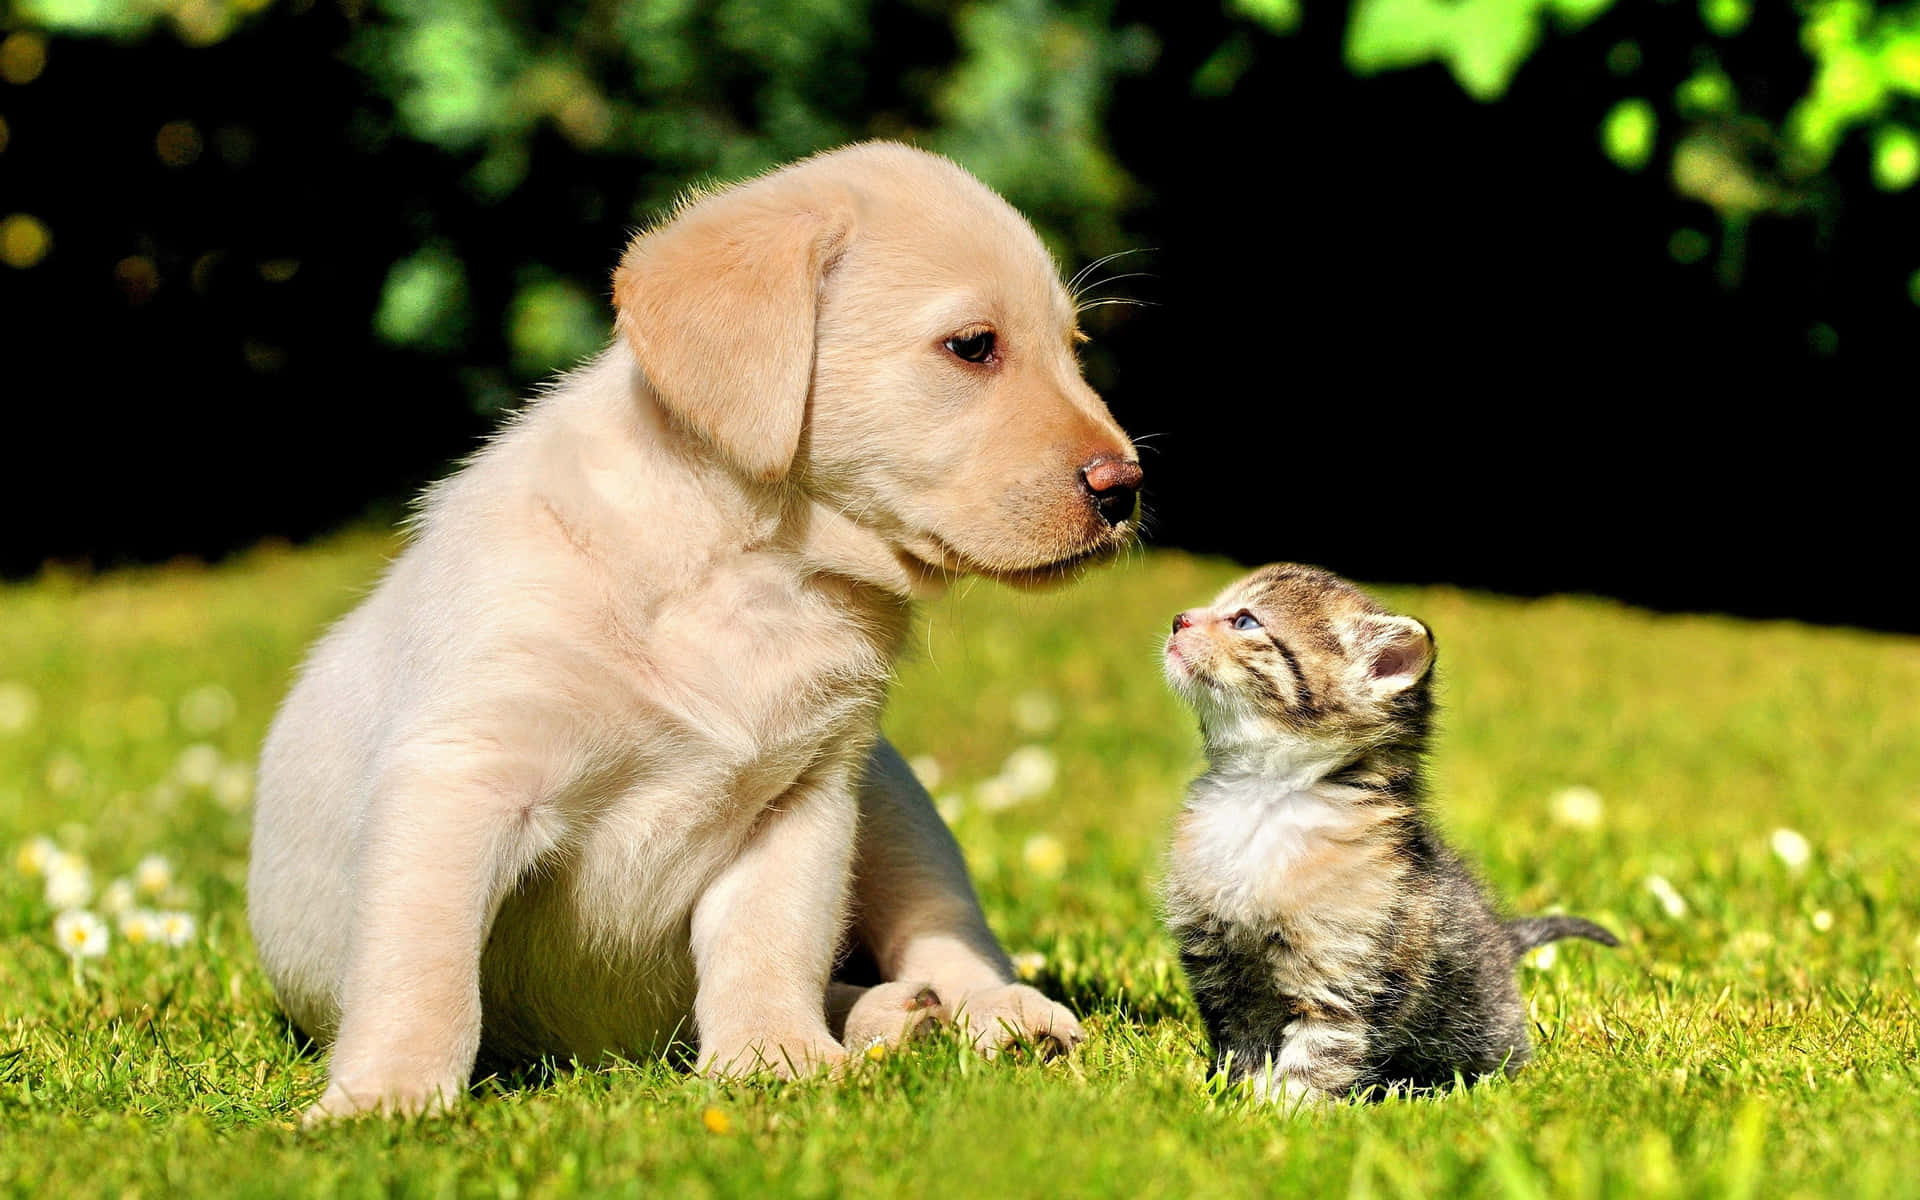 A beautiful moment between a kitten and puppy. Wallpaper